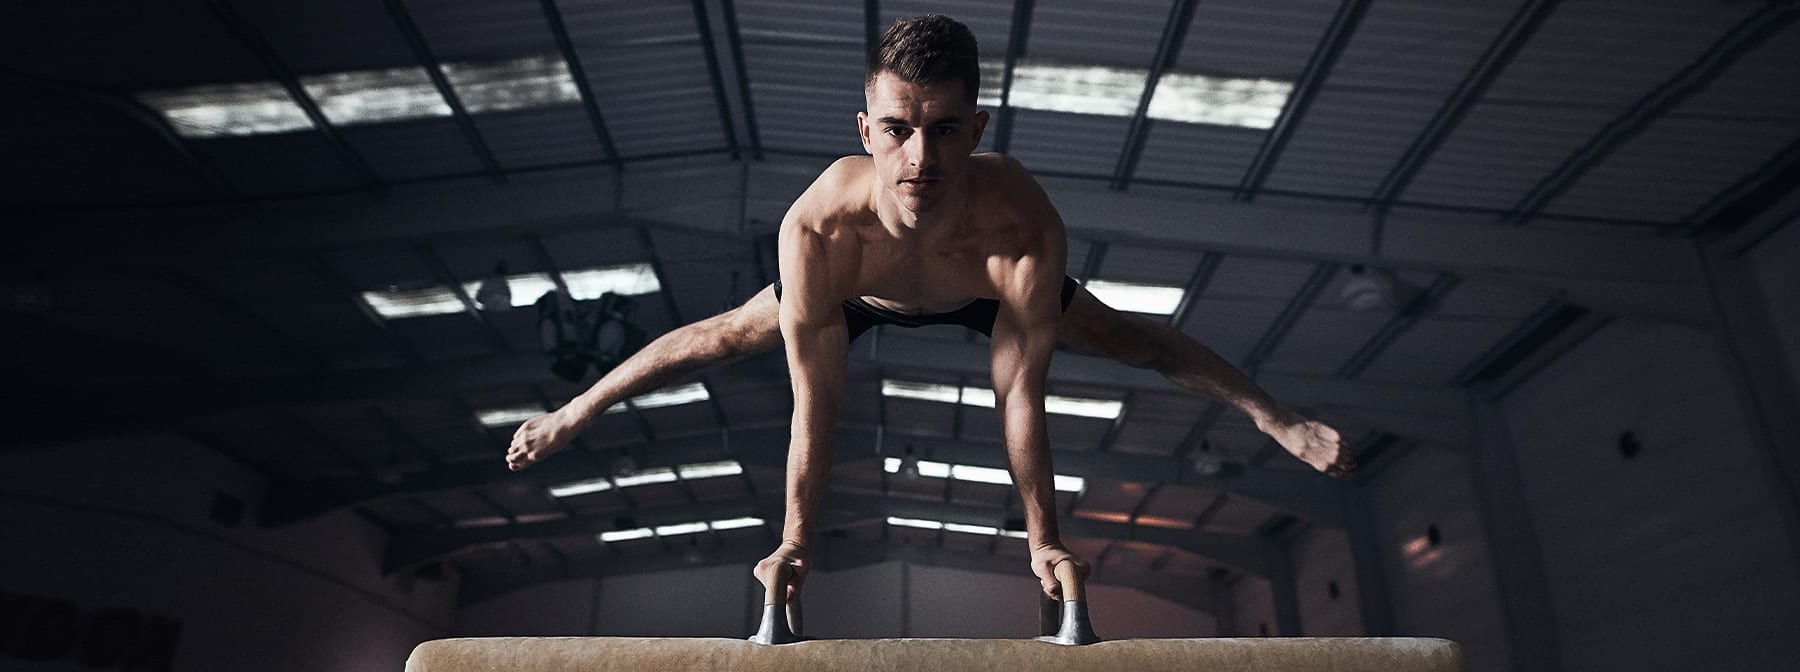 Co dělá z člověka pětinásobného olympijského medailistu? | Max Whitlock o ambicích, nezdarech a obětování